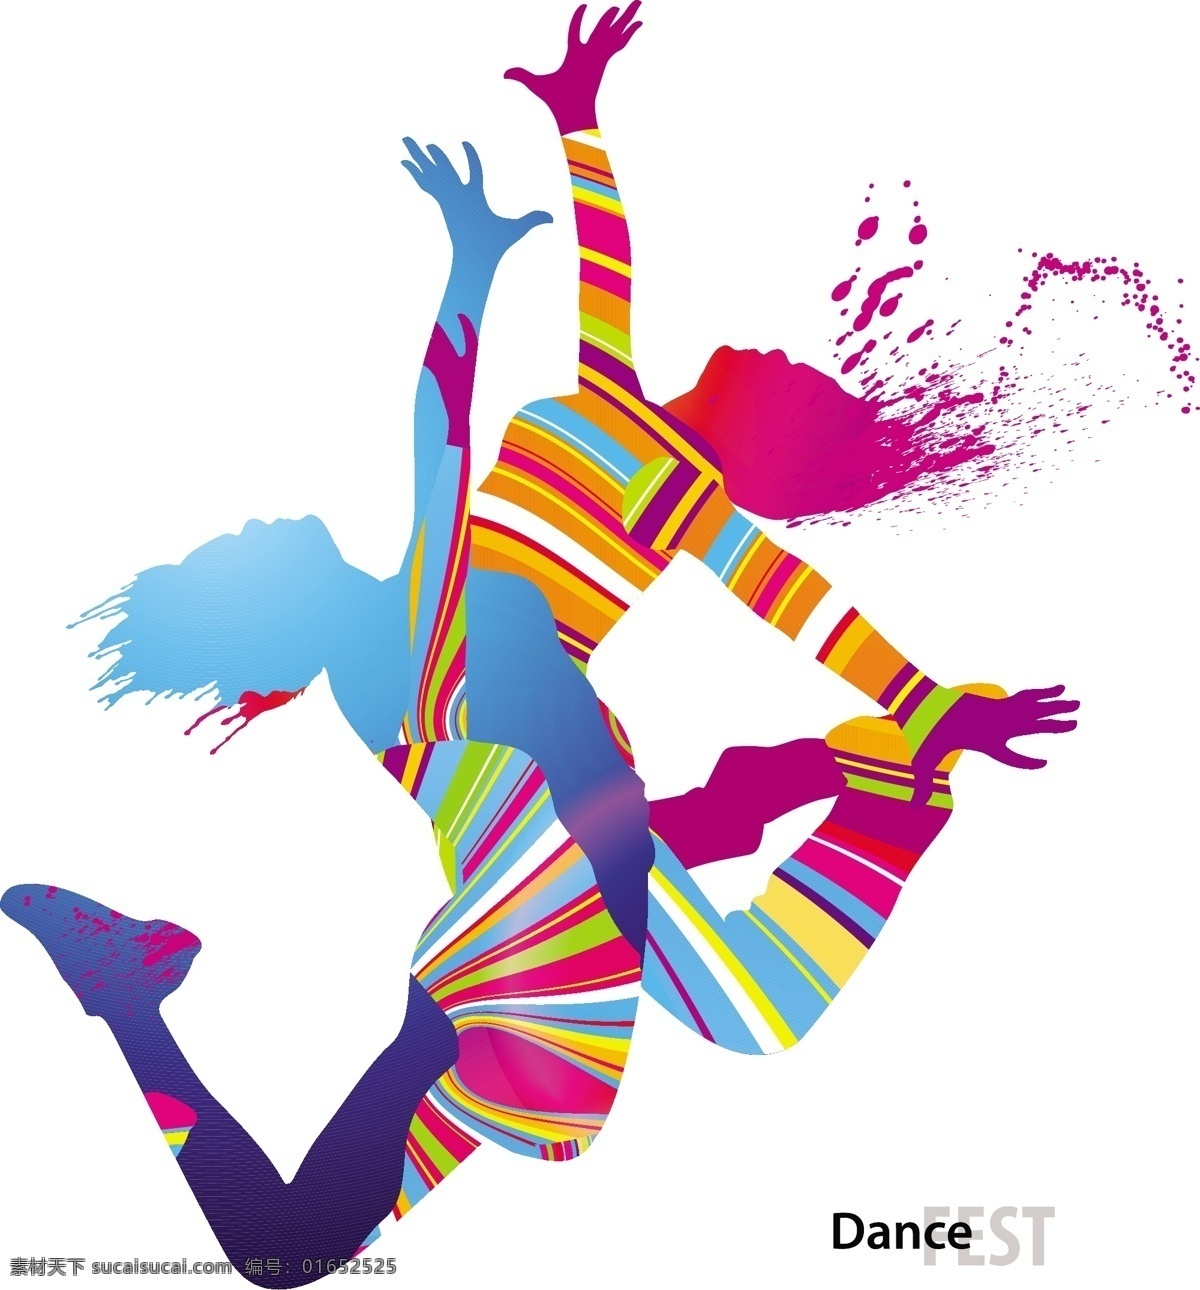 彩色 舞蹈 剪影 矢量 街舞 潮流 平面设计 水彩 人物剪影 活动 节日 运动 体育